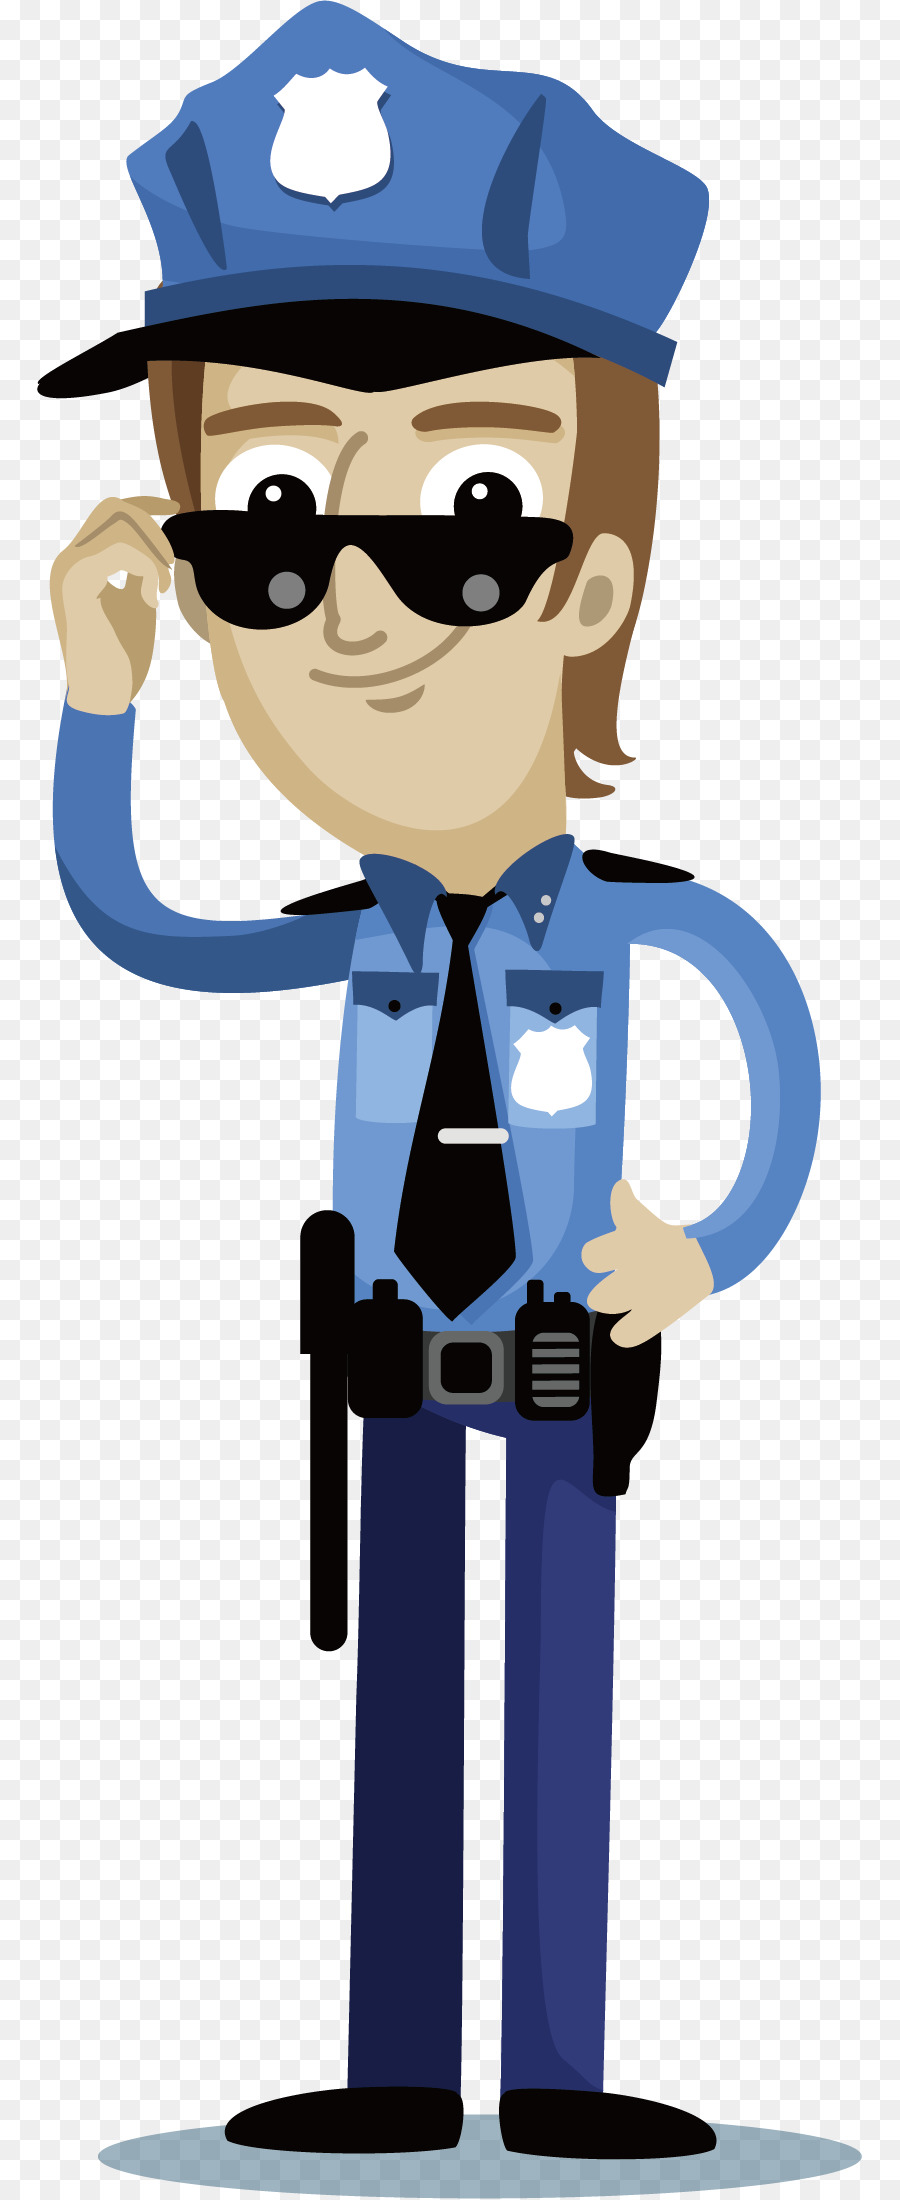 ضابط شرطة الشرطة الكرتون صورة بابوا نيو غينيا